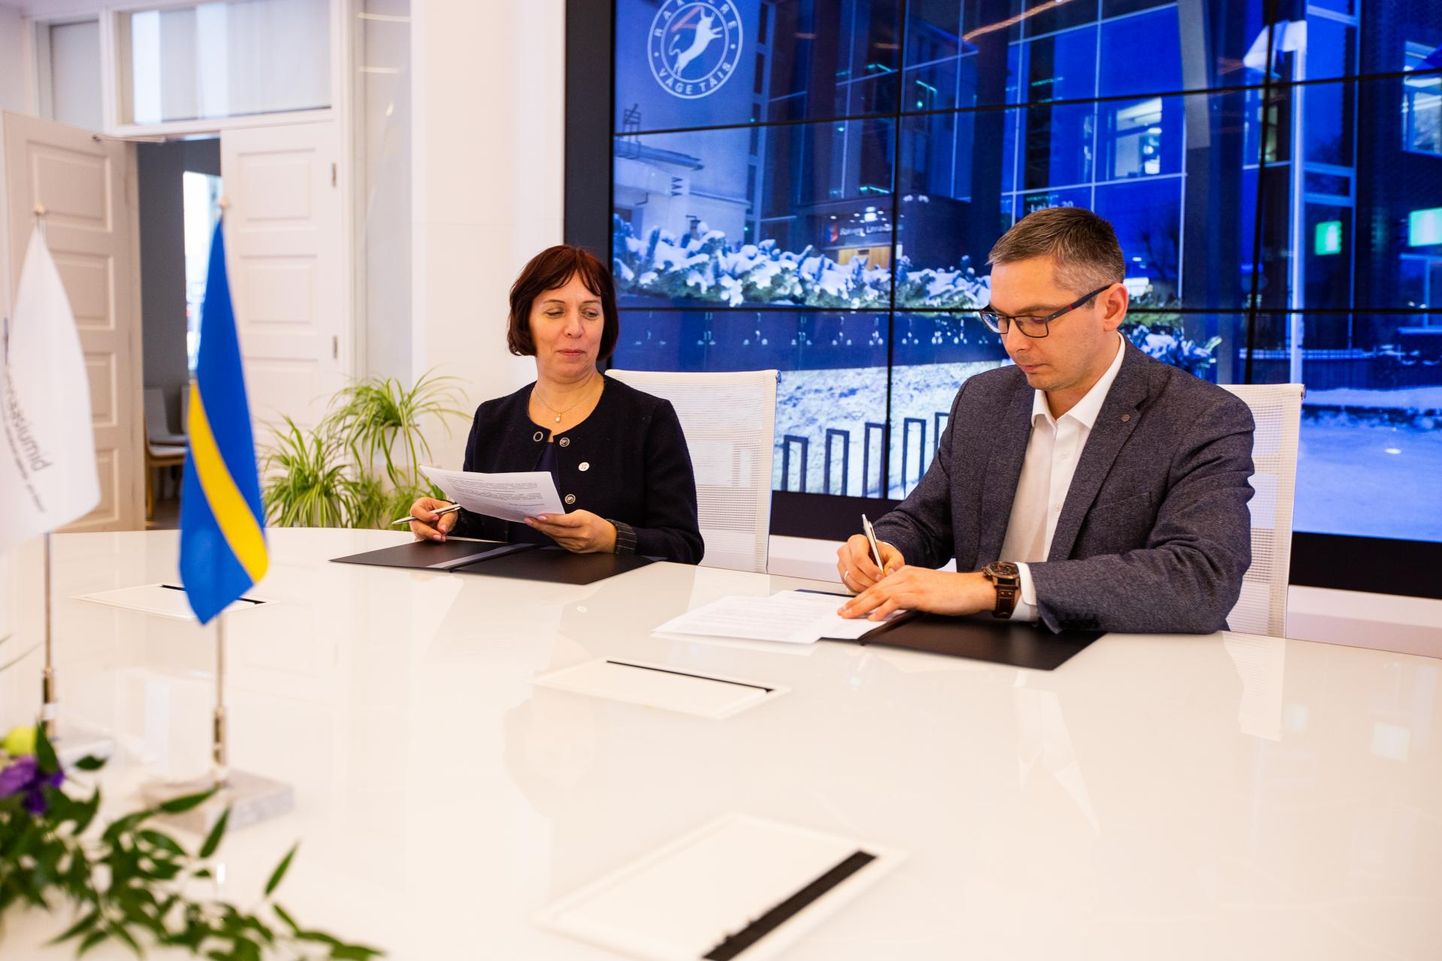 Tähtis otsus tehtud: haridus- ja teadusminister Mailis Reps ja Rakvere linnapea Marko Torm allkirjastasid lepingu riigigümnaasiumi rajamiseks Rakveresse.